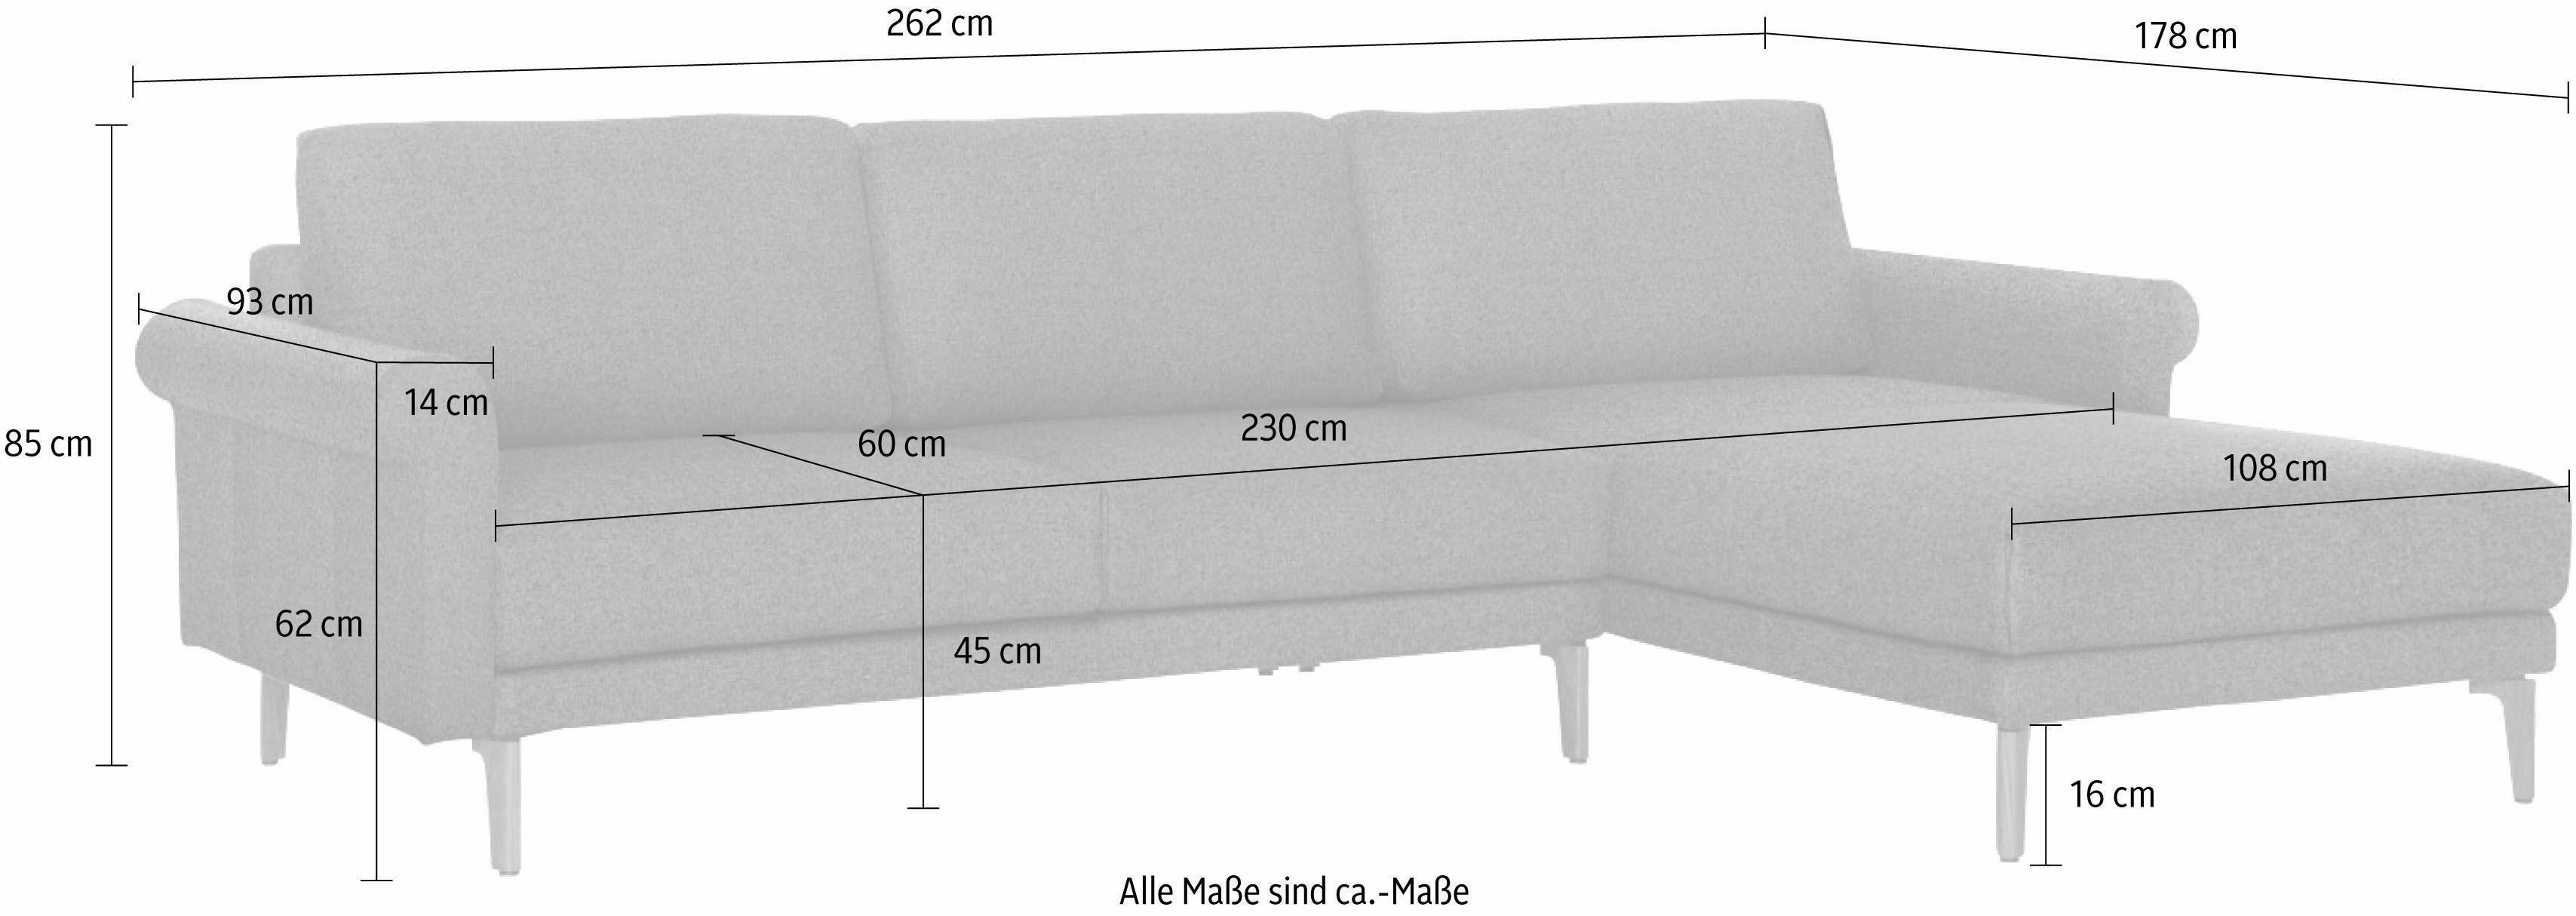 sofa hülsta cm, 262 Fuß hs.450, Nussbaum Ecksofa Landhaus, modern Breite Armlehne Schnecke